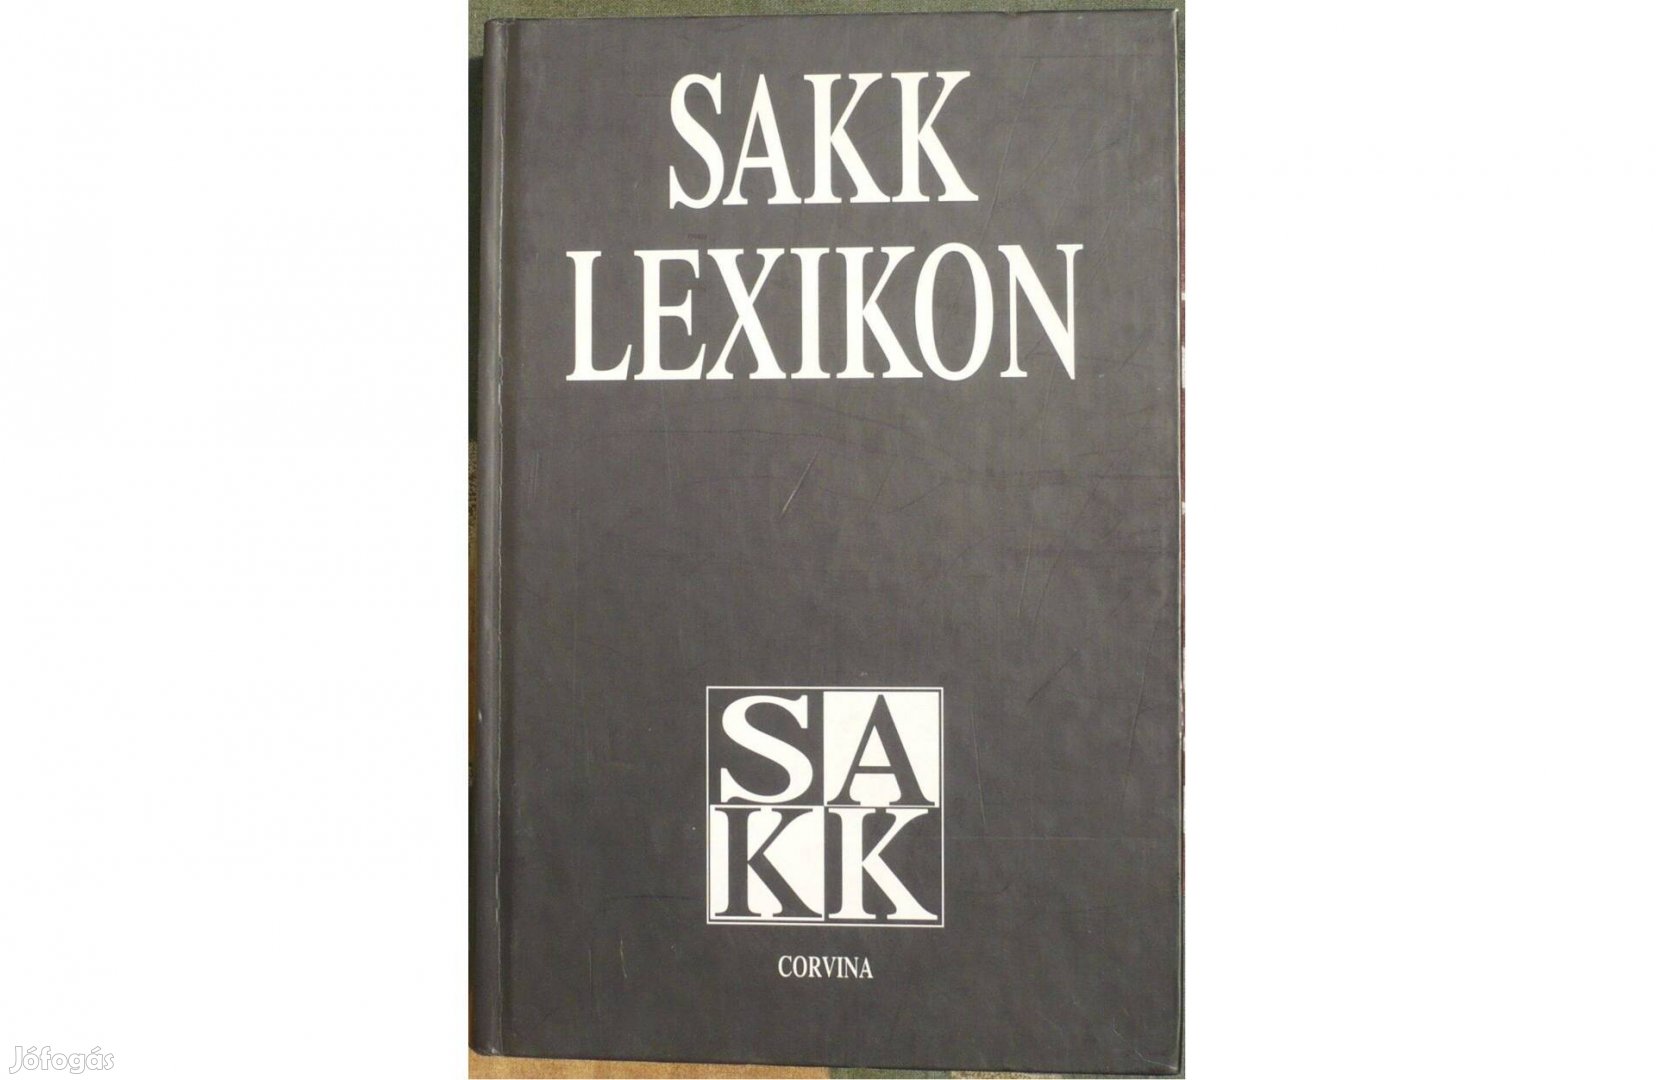 Sakklexikon - 1994, Corvina